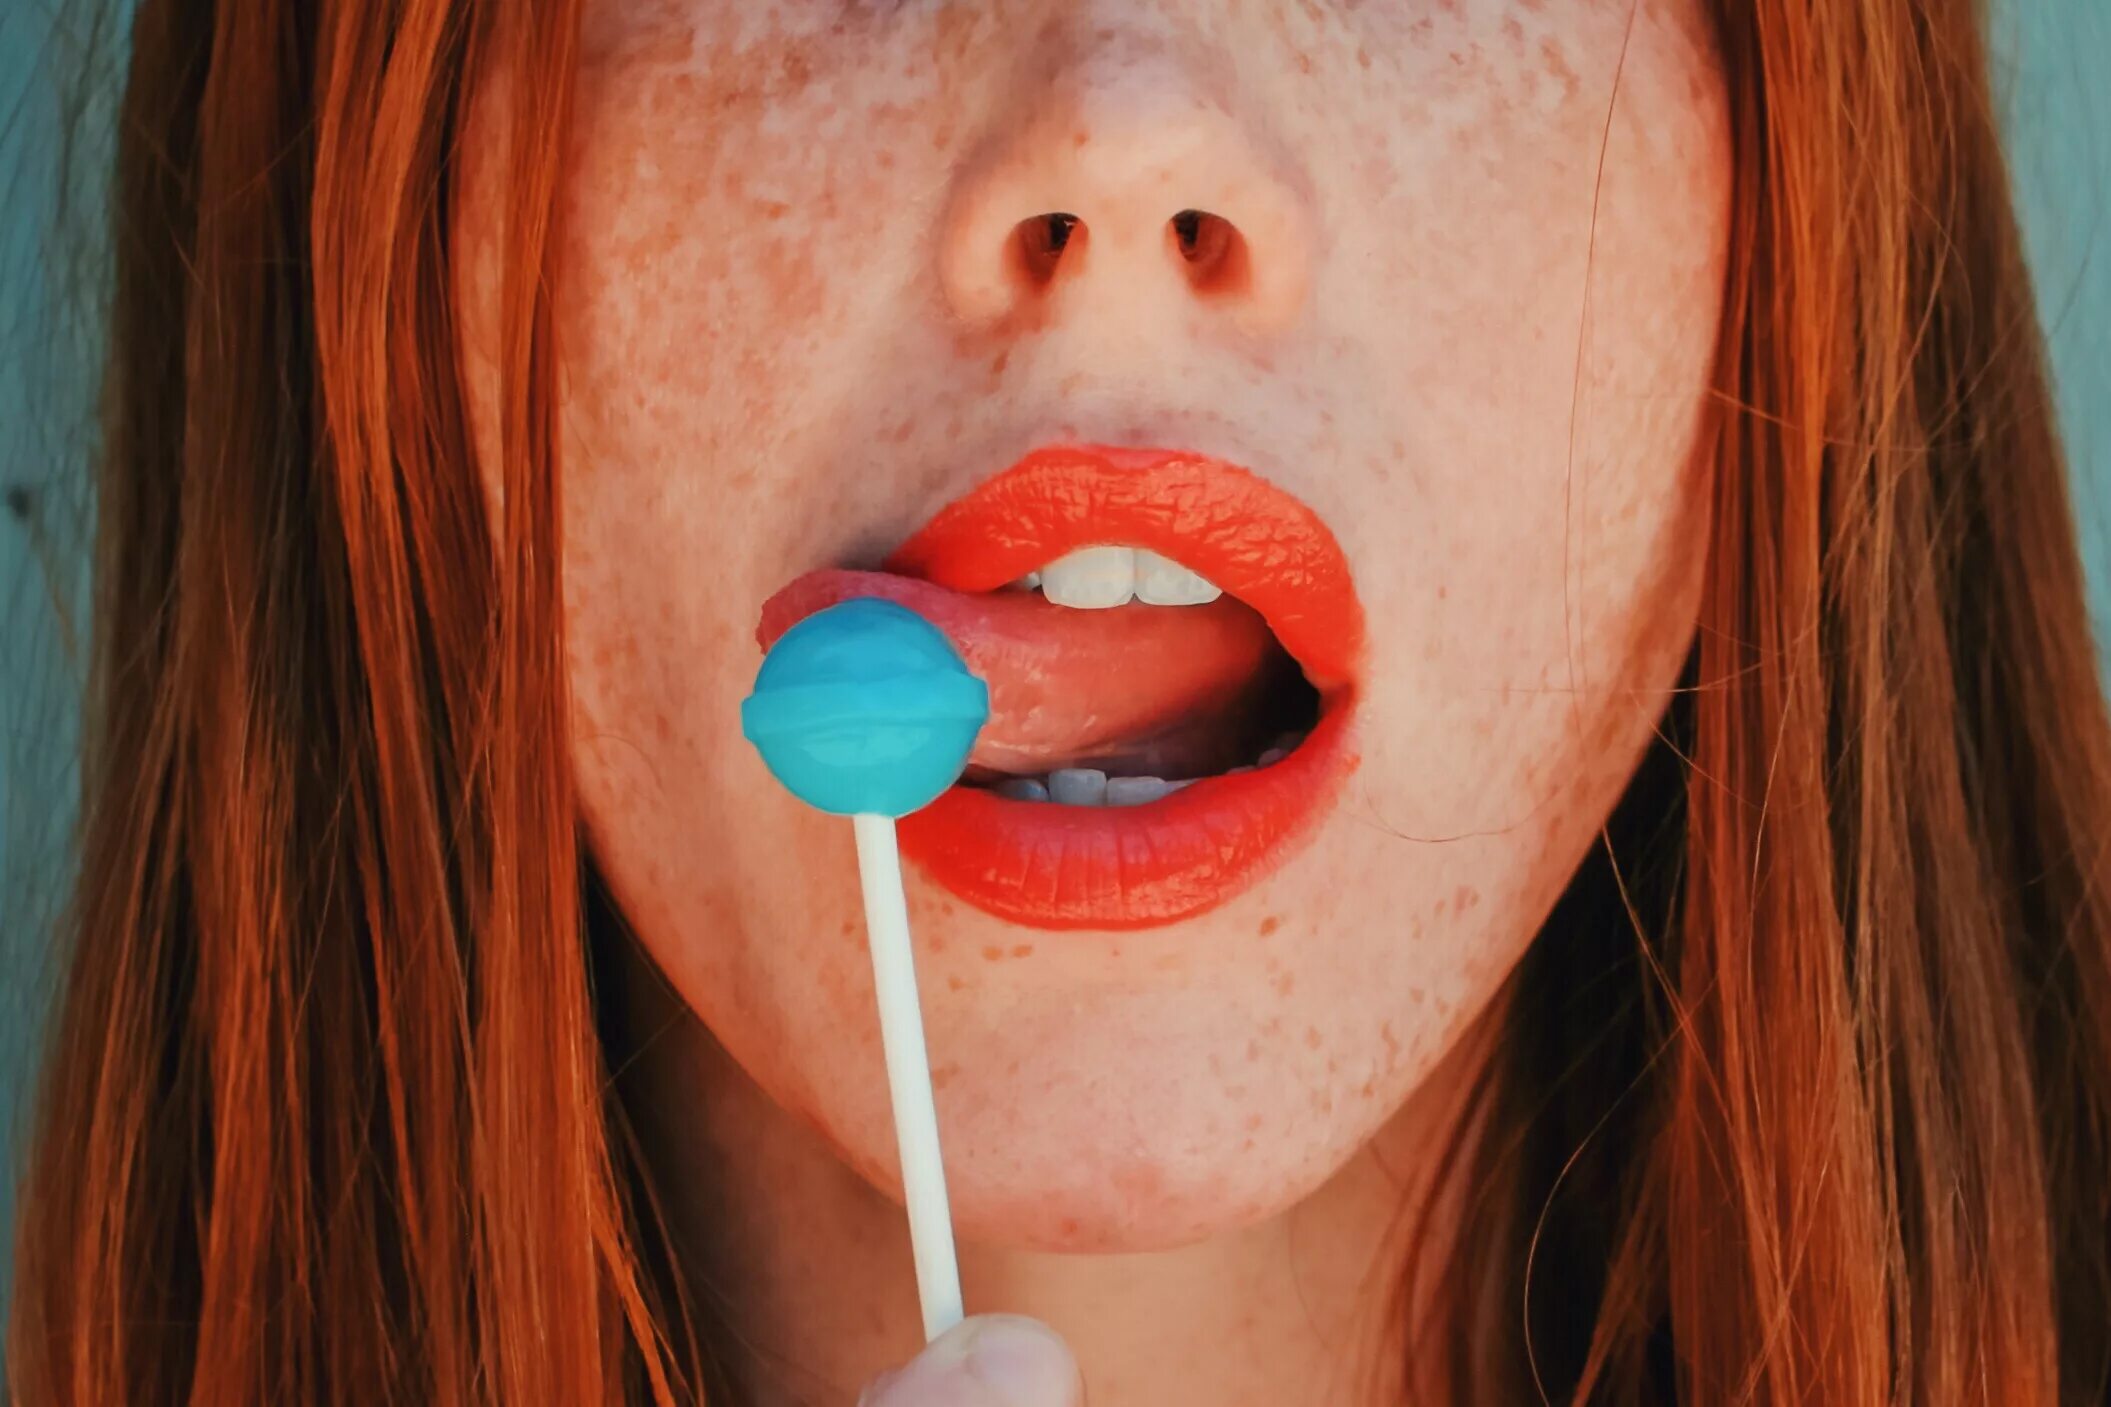 Dick taste. Опухшие вкусовые рецепторы. Вкусовое восприятие. Губы с леденцом. Lollipop Lips актриса.